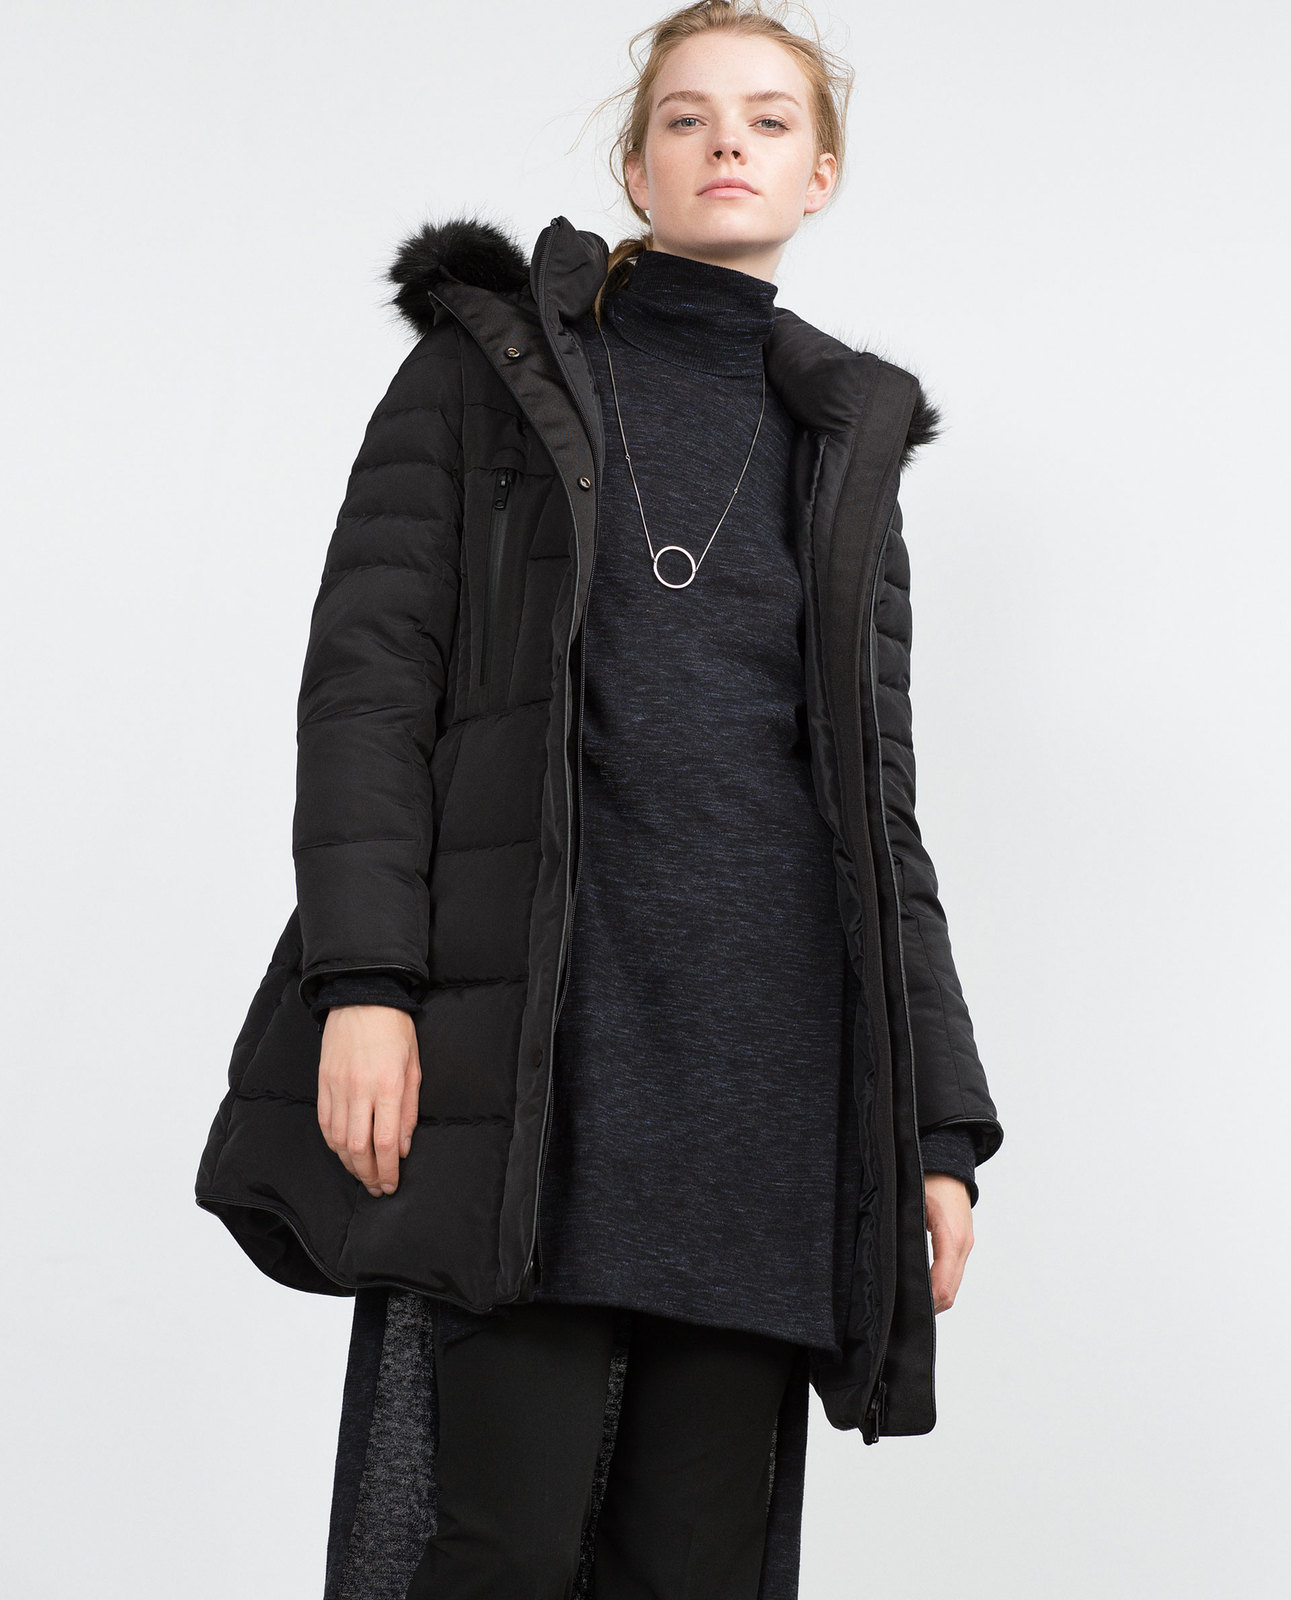 Zara fekete levehető szőrmés-kapucnis anorák 2015 fotója